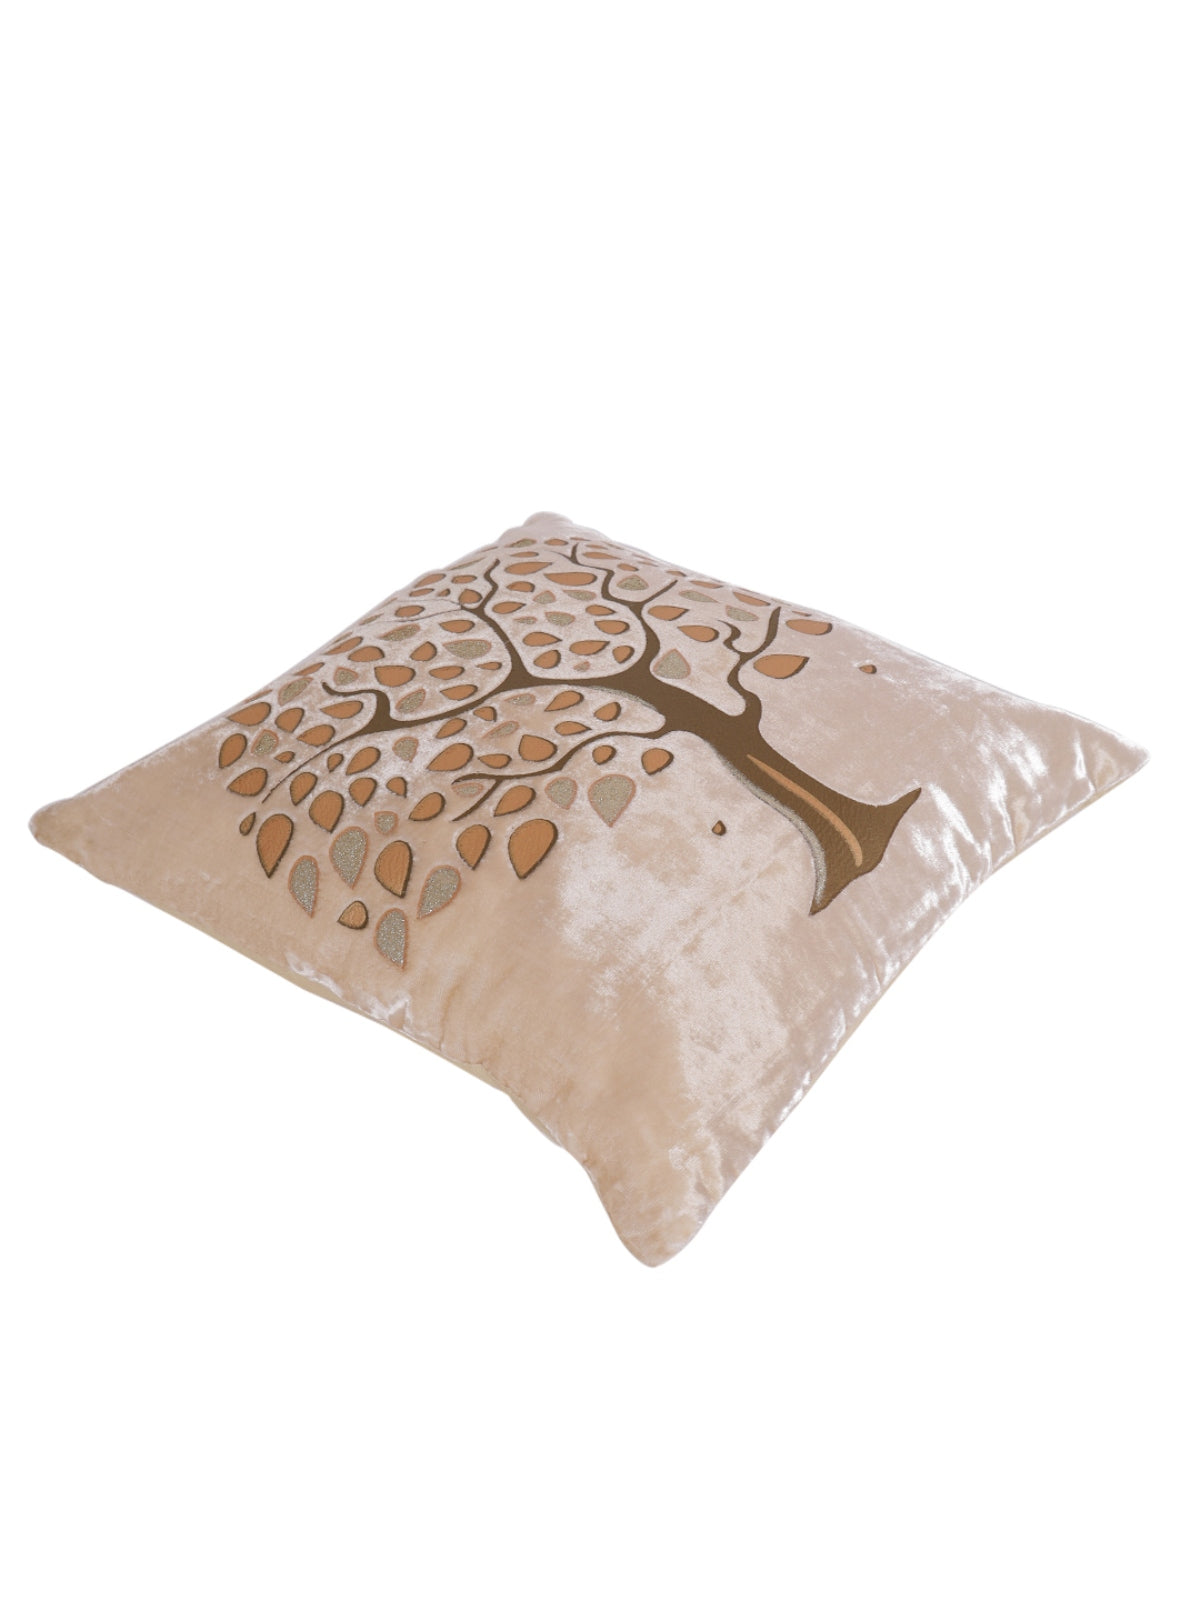 Velvet Tree Designer Cushion Cover 16x16 Inche, Set of 5 - Beige